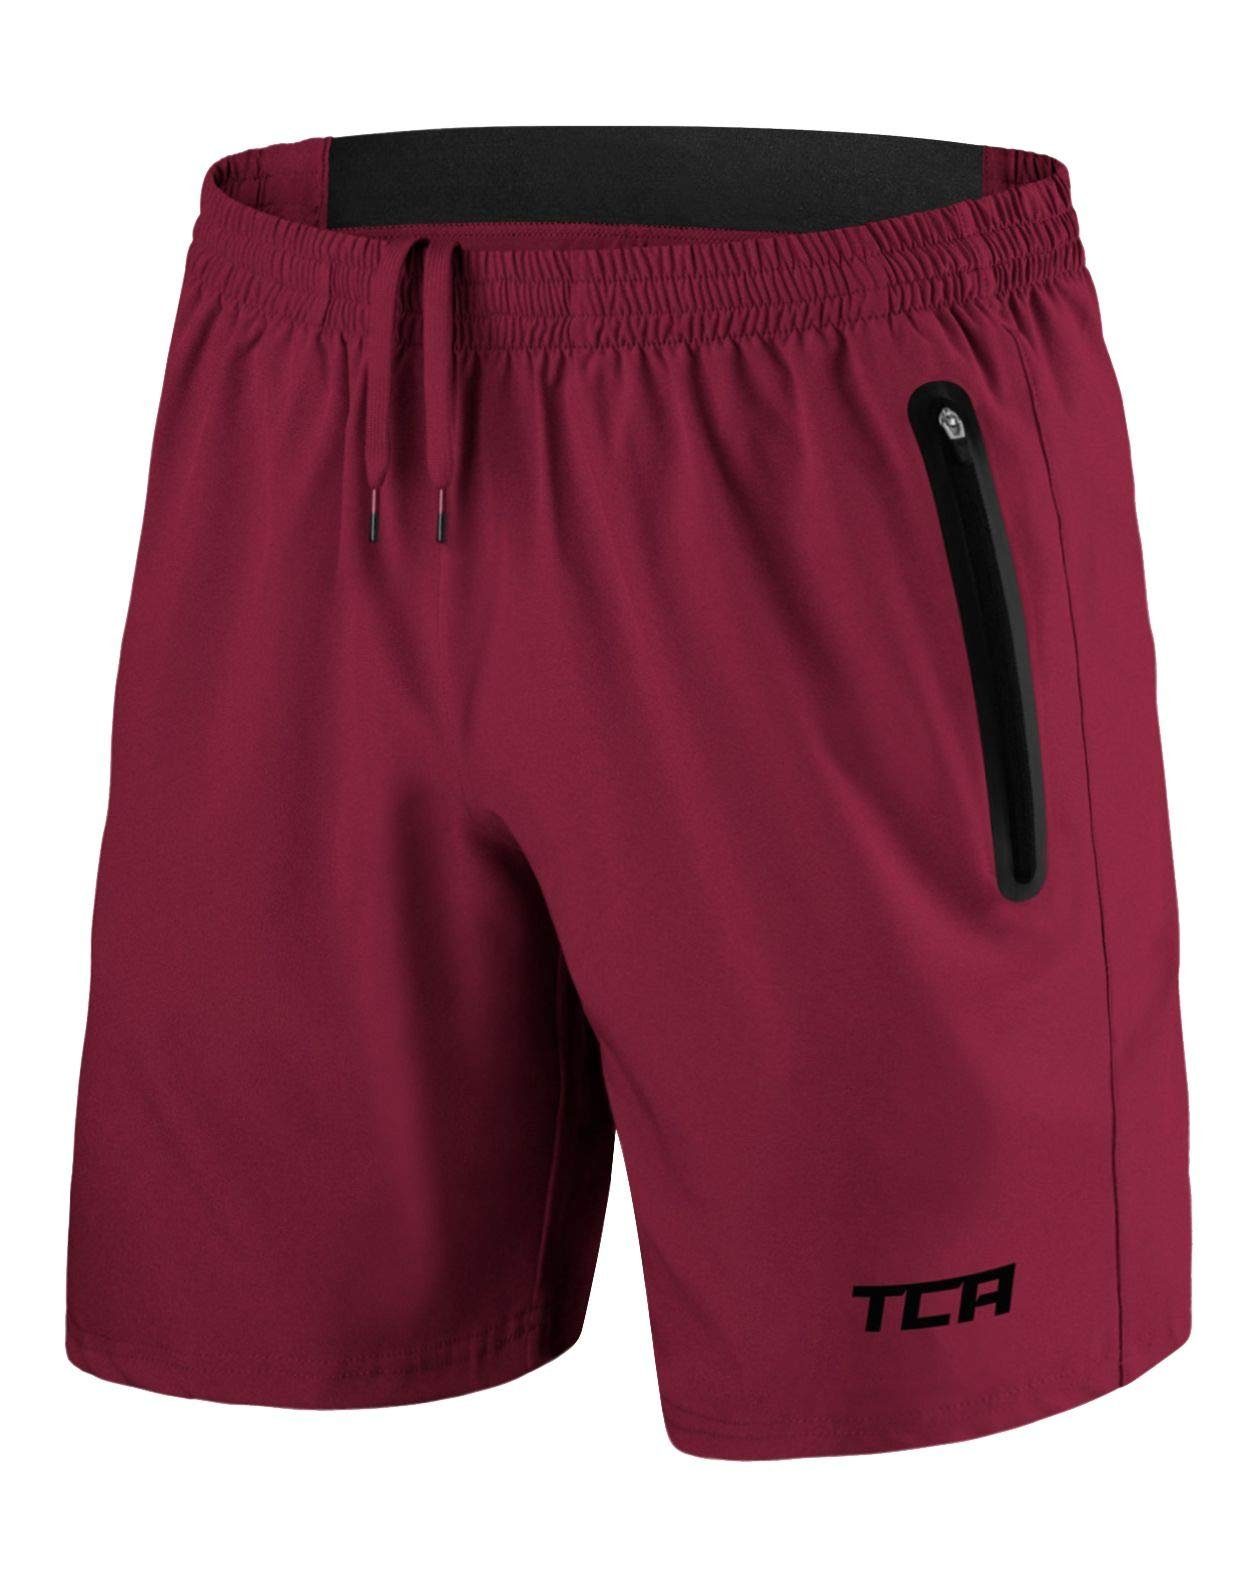 TCA Trainingsshorts TCA Herren Elite Tech Laufhose mit Reißverschlusstaschen - Rot, S